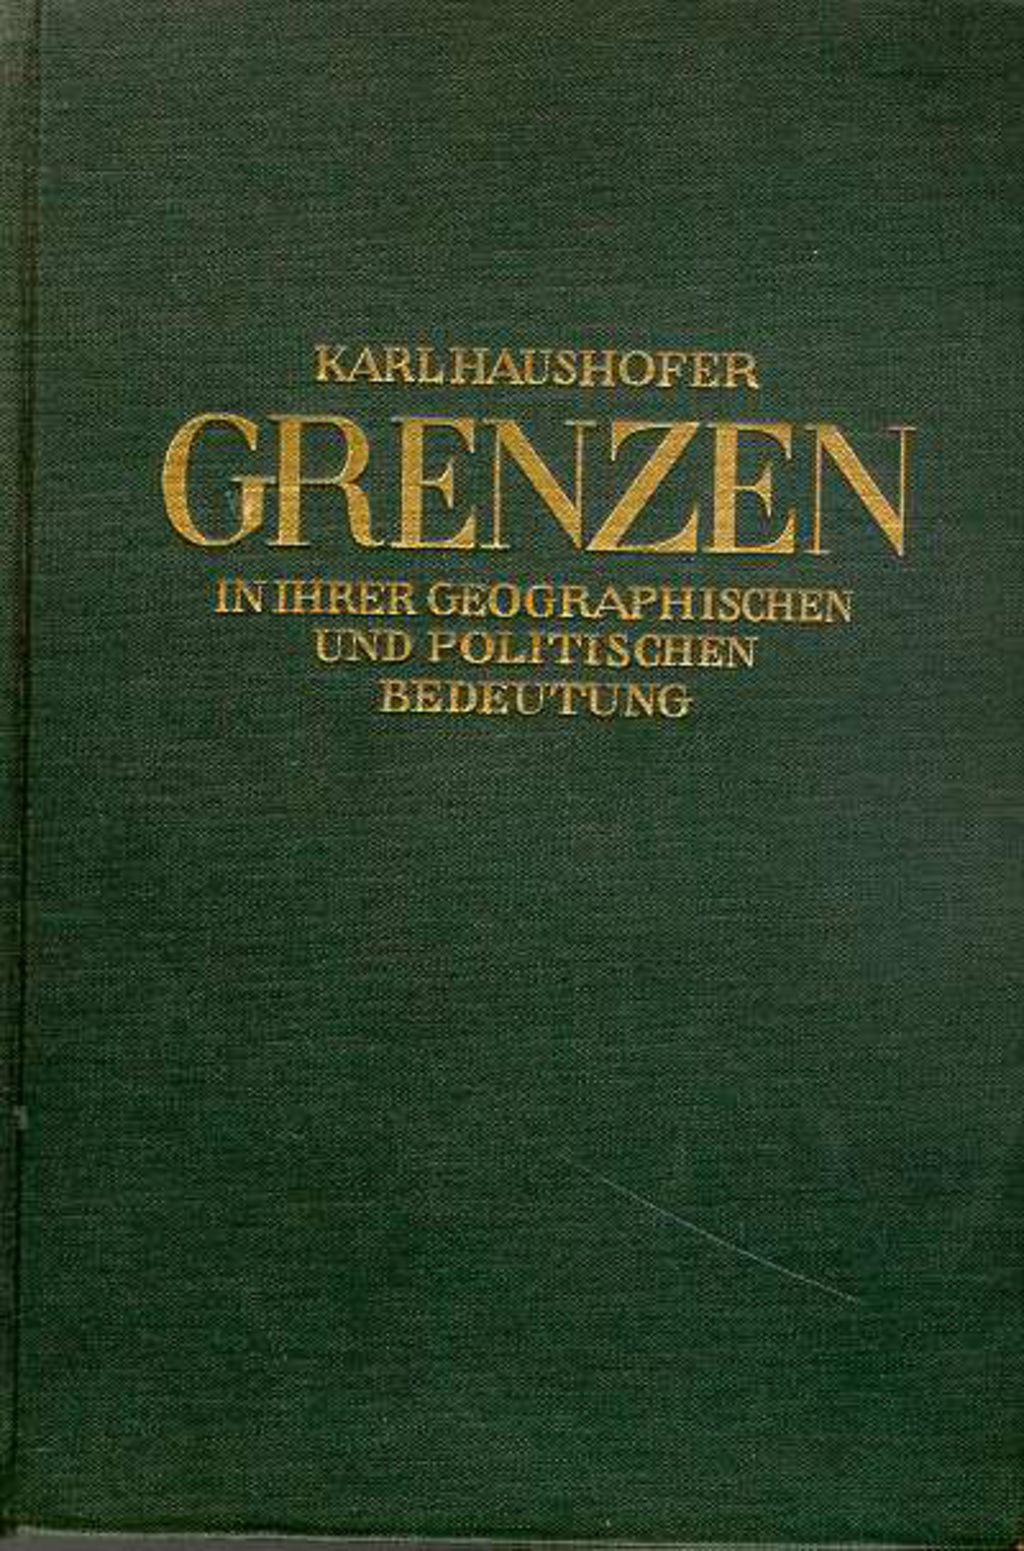 Exponat: Buch: Haushofer, Karl "Grenzen in ihrer geographischen und politischen Bedeutung", 1927